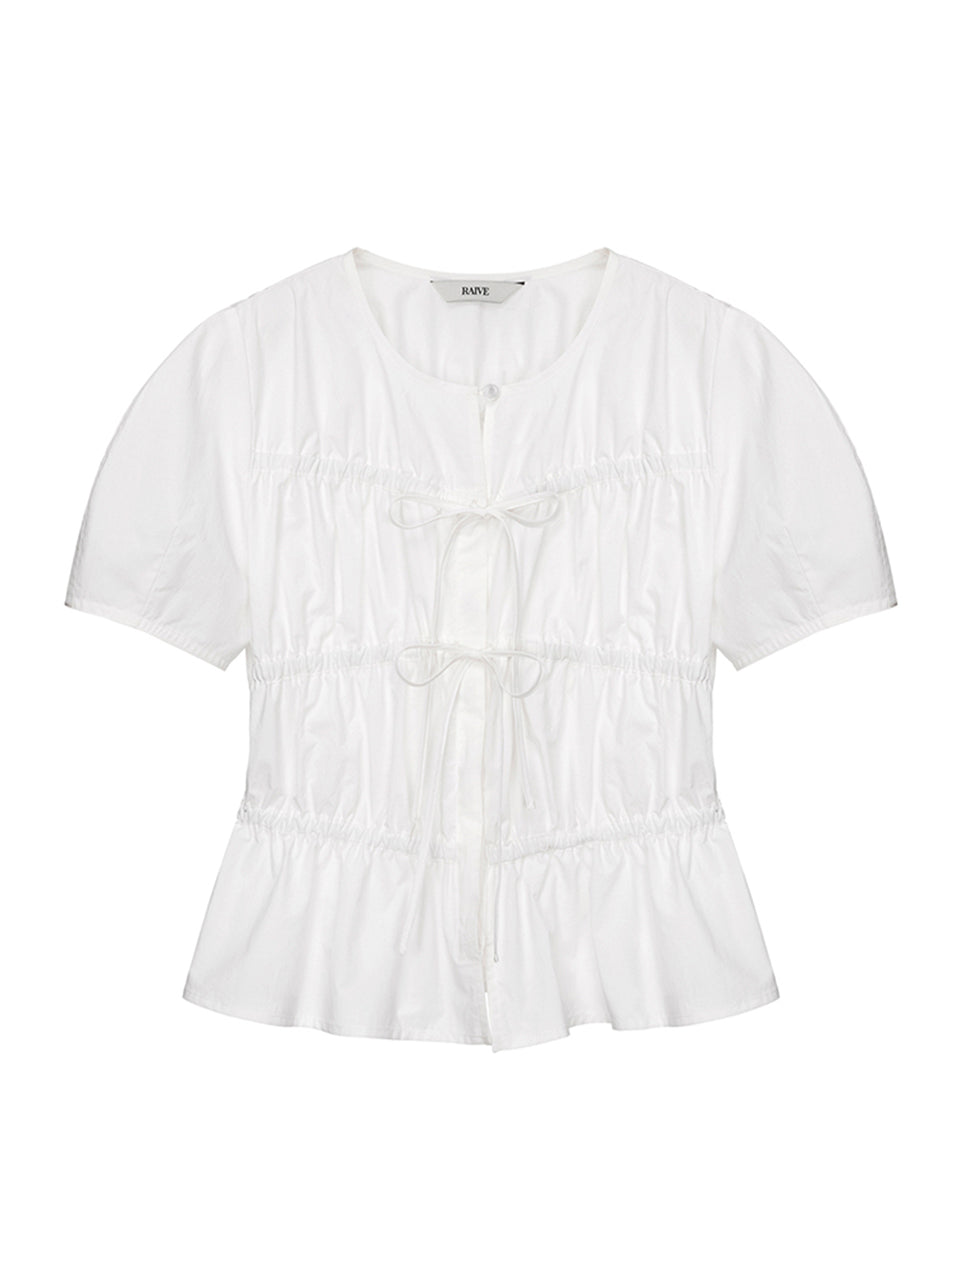 Ribbon Shirring Blouse in White